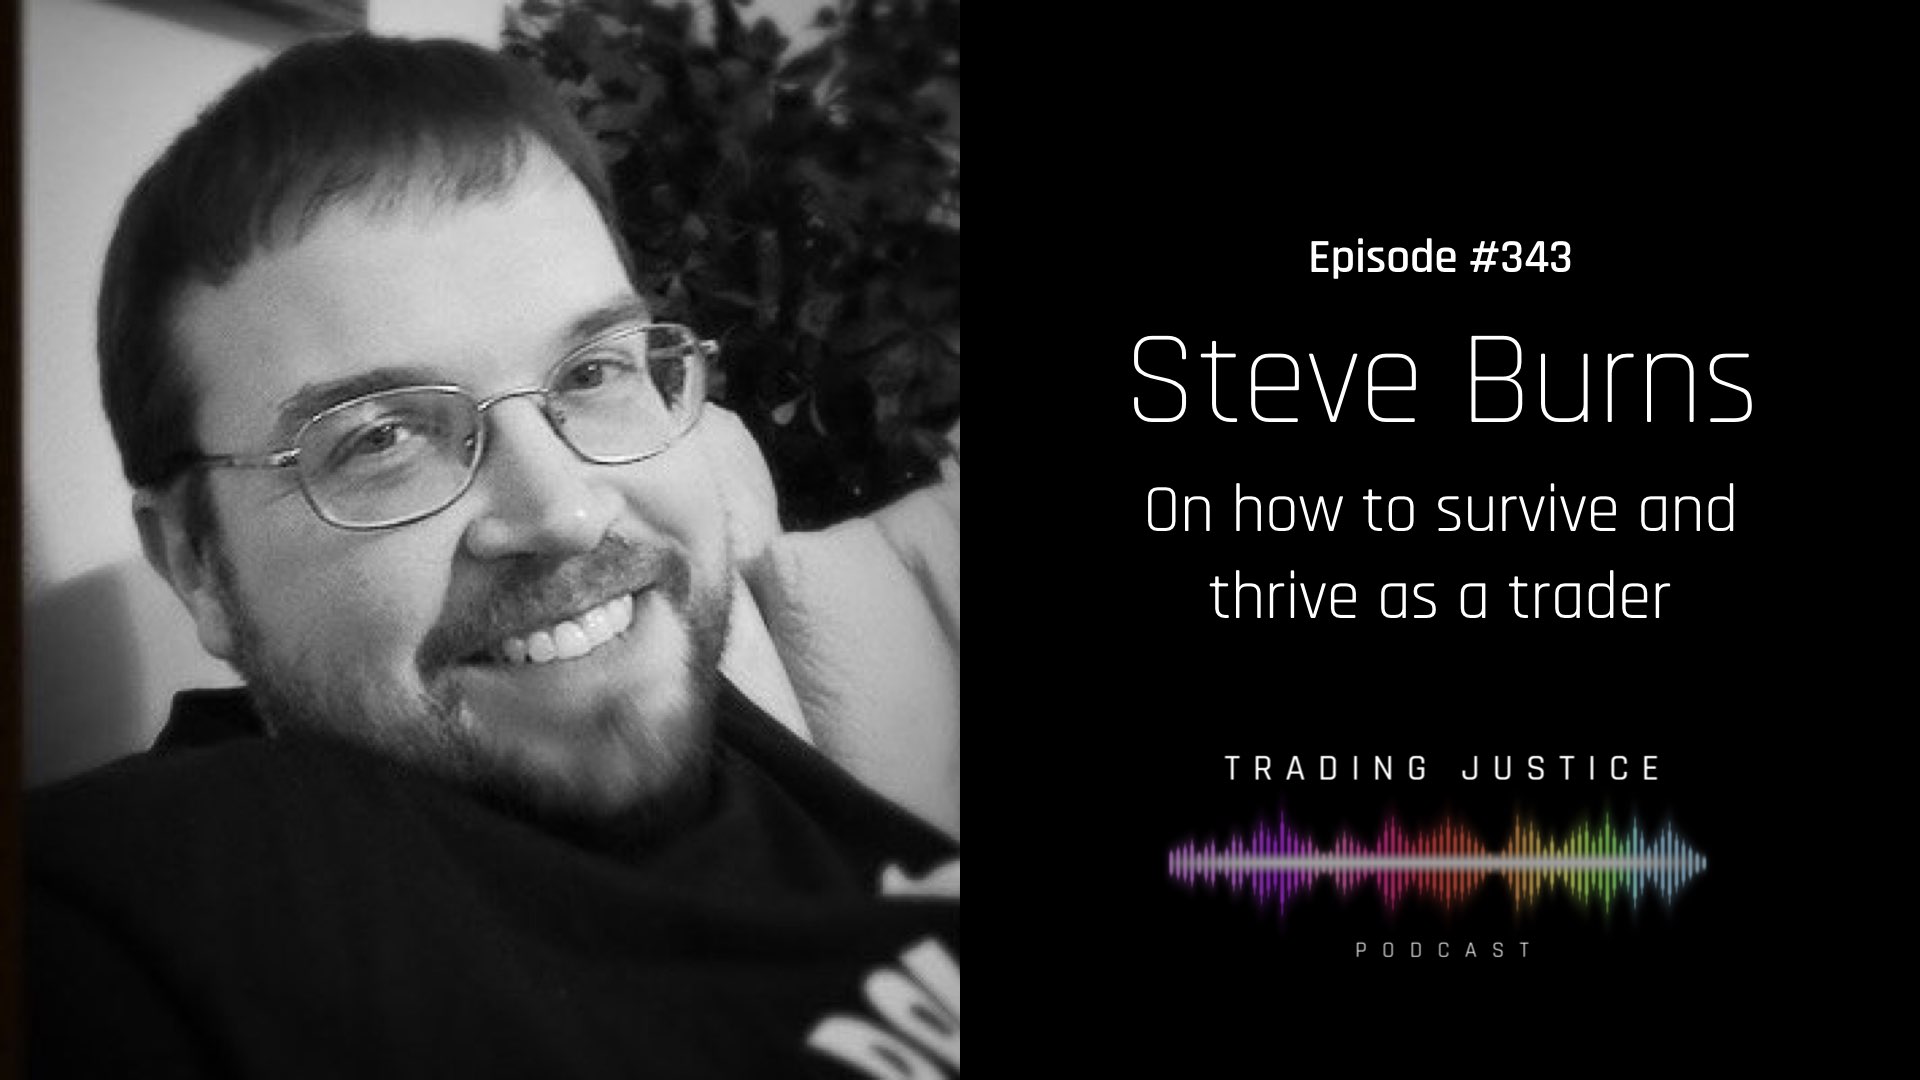 Trading Justice Episode 343 - Steve Burns